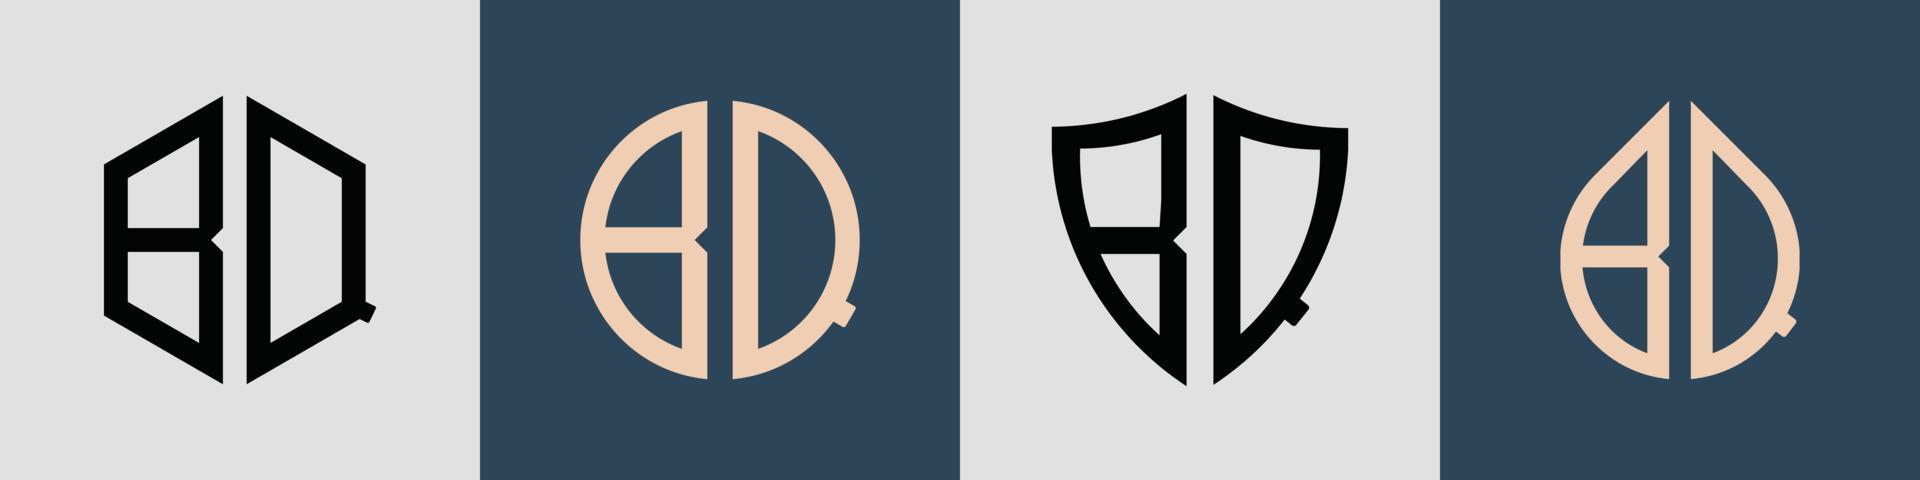 ensemble de conceptions de logo bq de lettres initiales simples créatives. vecteur